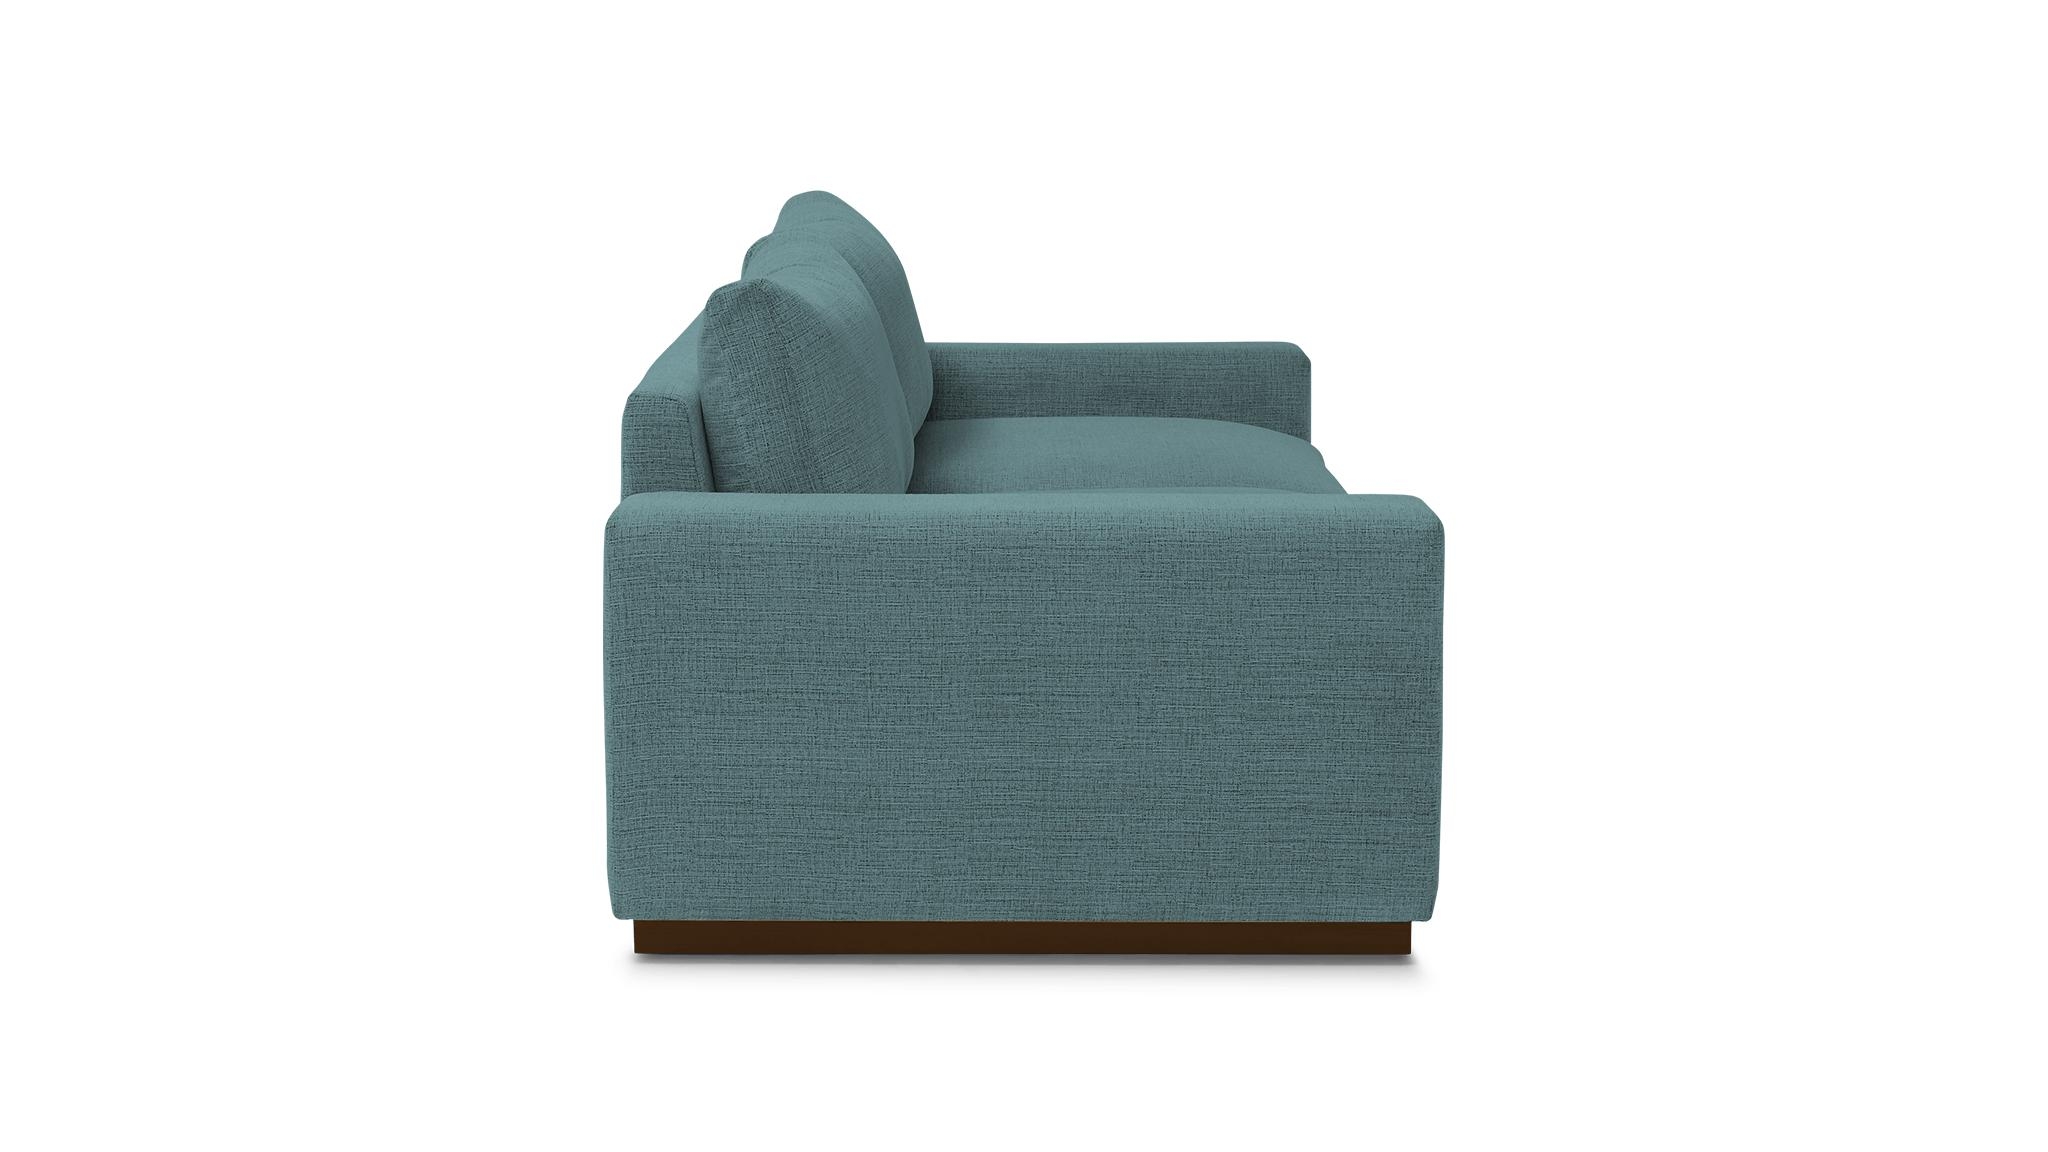 Blue Holt Mid Century Modern Sofa - Dawson Slate - Mocha - Image 2